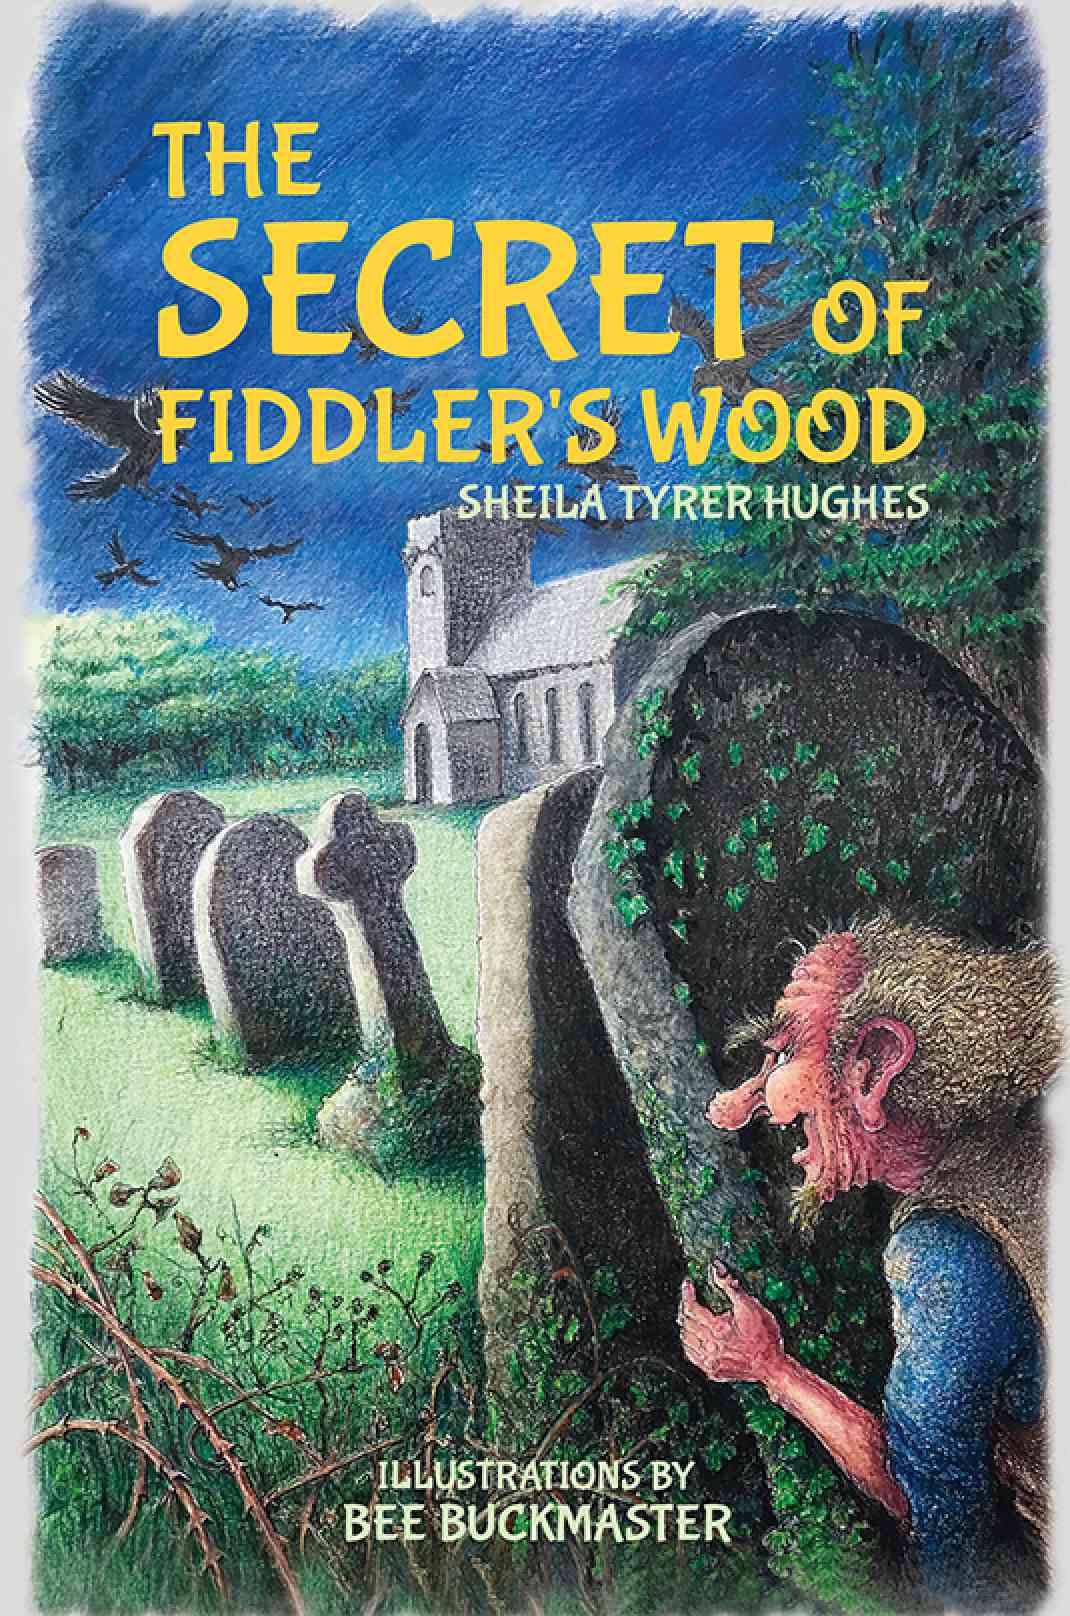 ‘The Secret of Fiddler's Wood’ by Sheila Tyrer Hughes gets featured on ShropshireStar.com